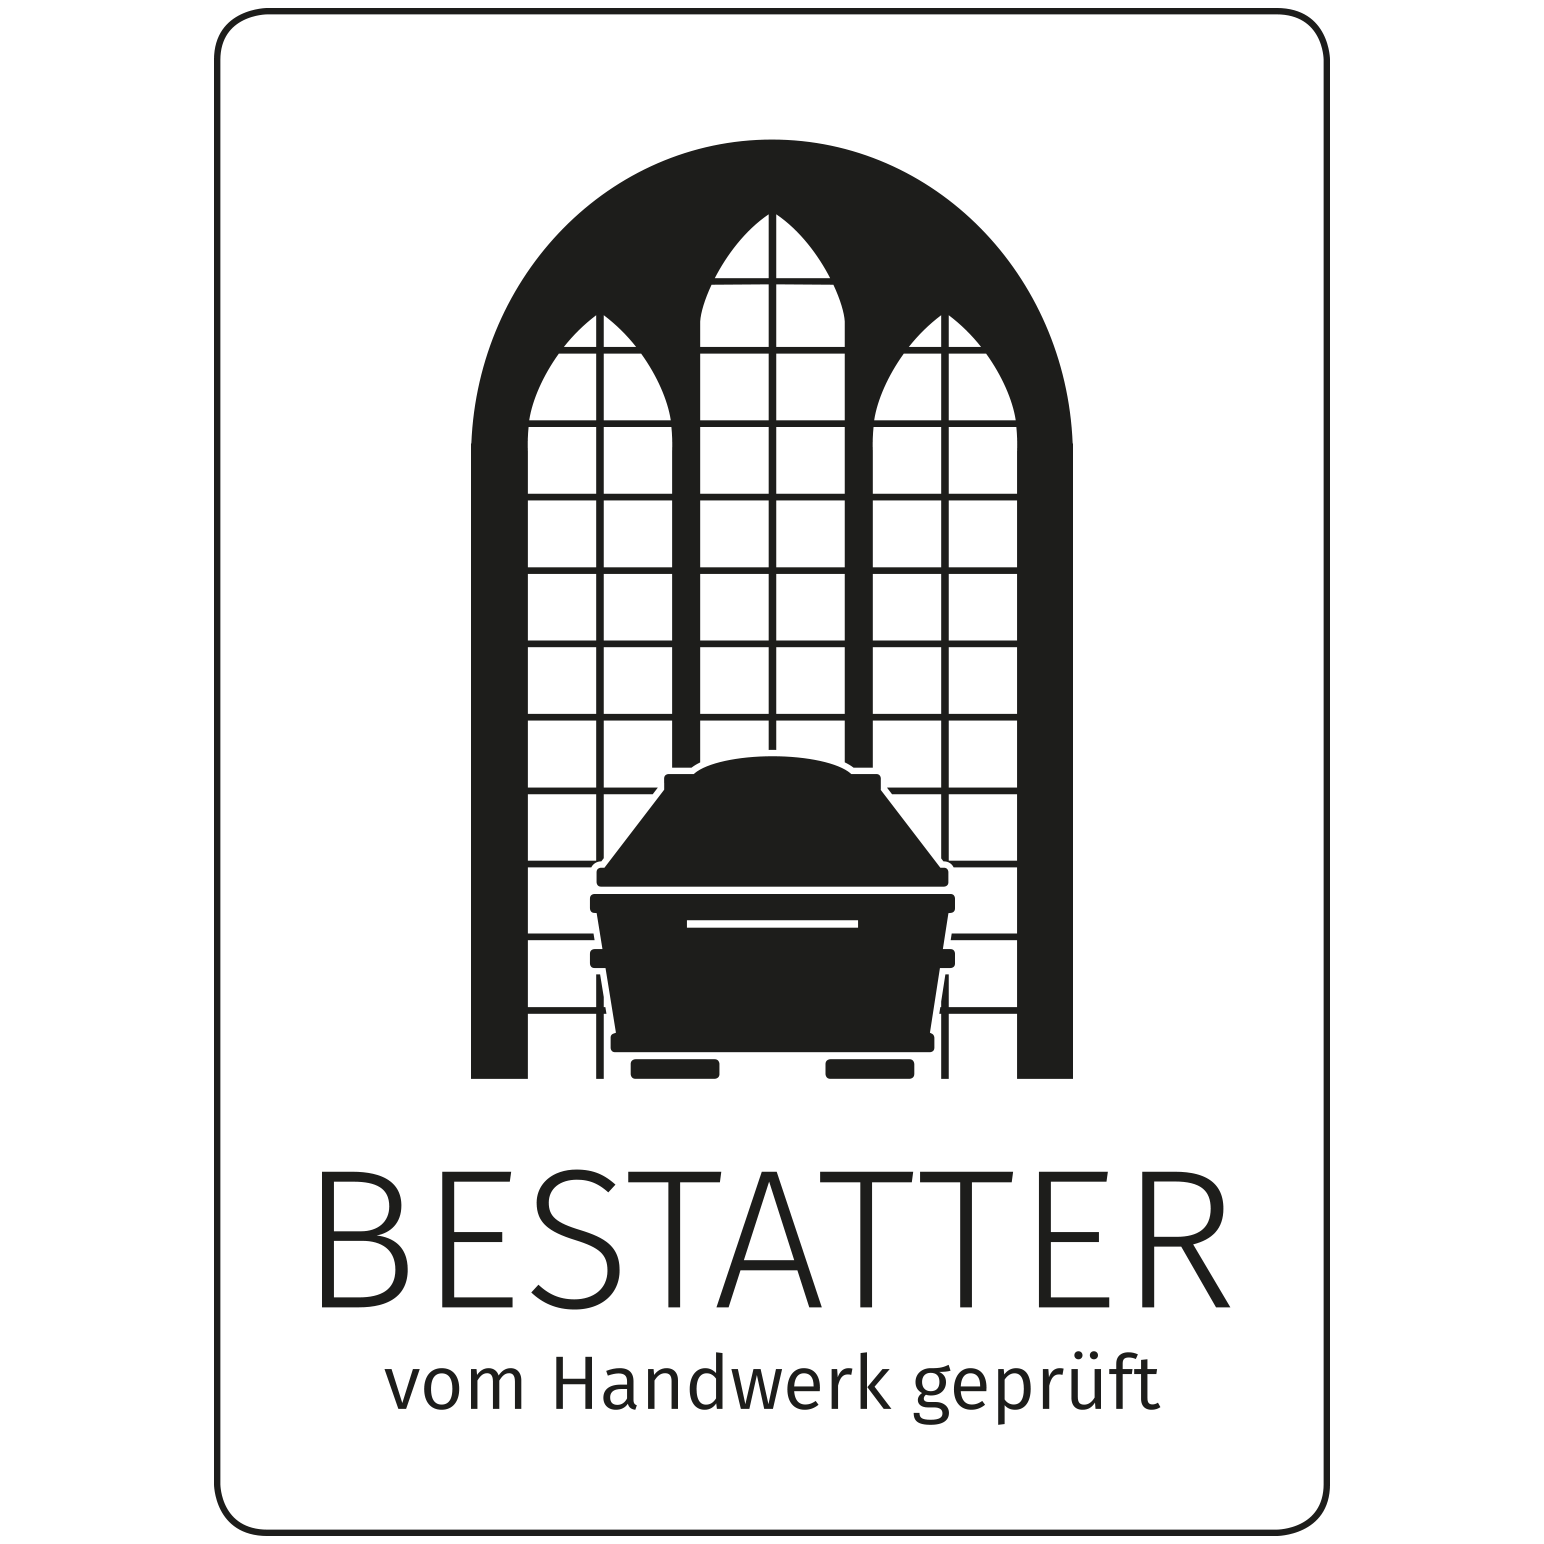 Bestattungsinstitut Bernburg Weinecker & Görsch GmbH in Bernburg an der Saale - Logo